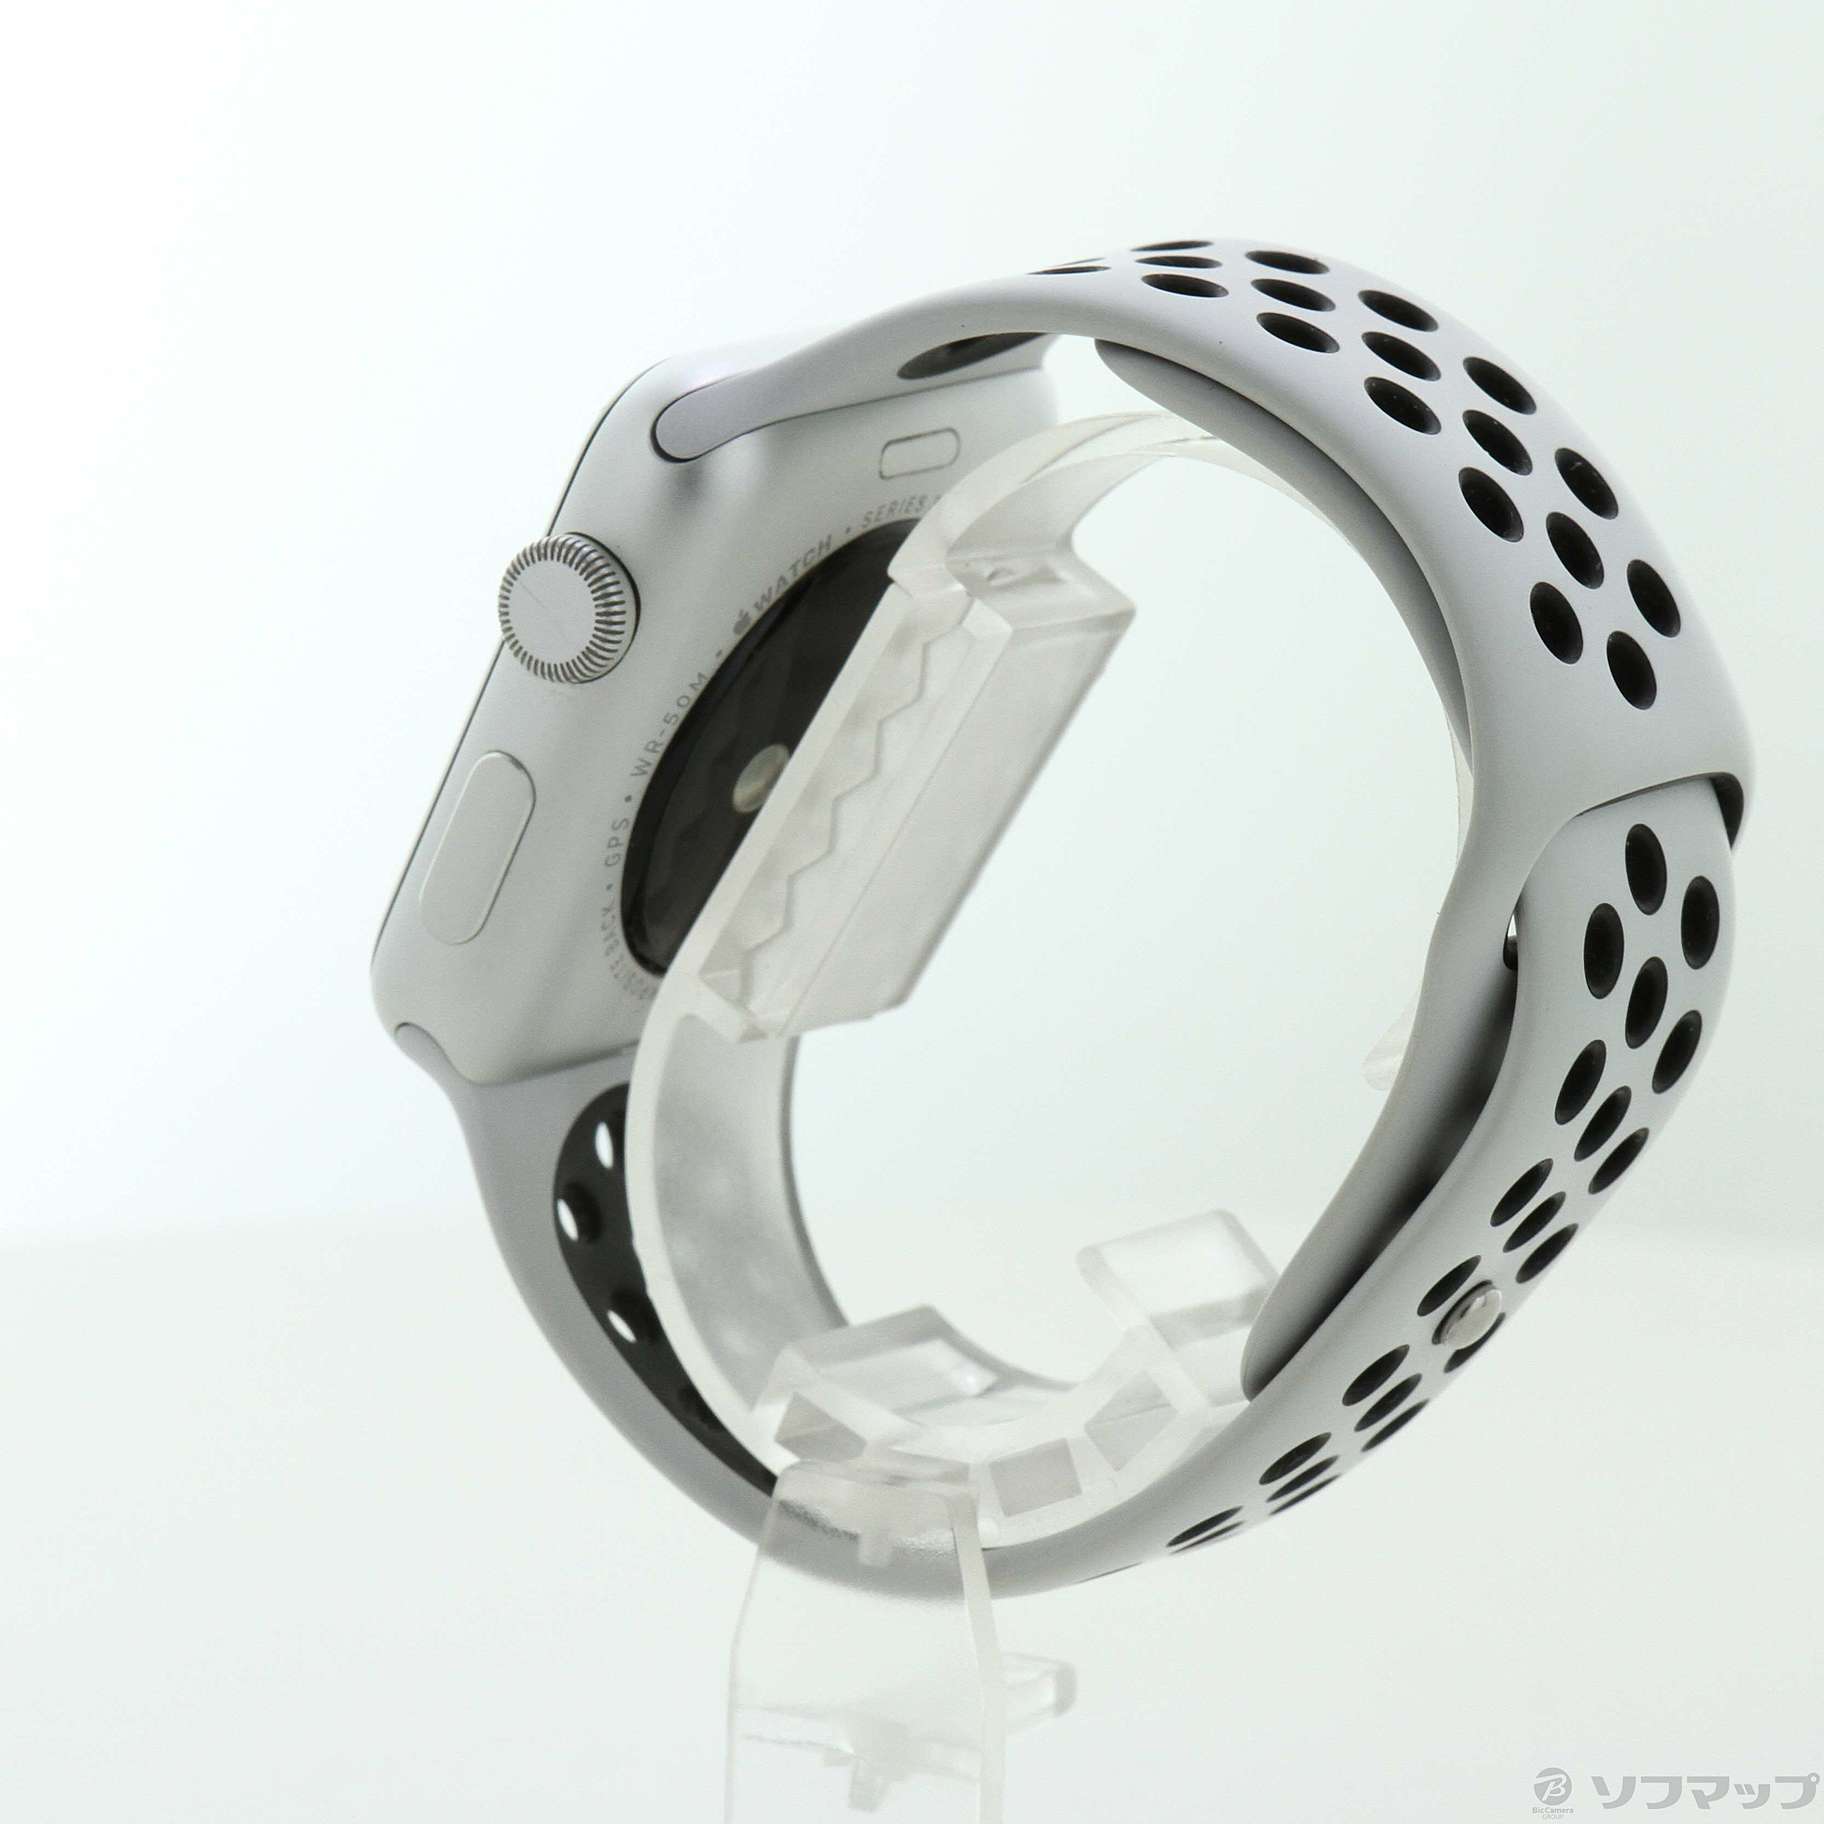 中古】Apple Watch Series 3 Nike+ GPS 42mm シルバーアルミニウム